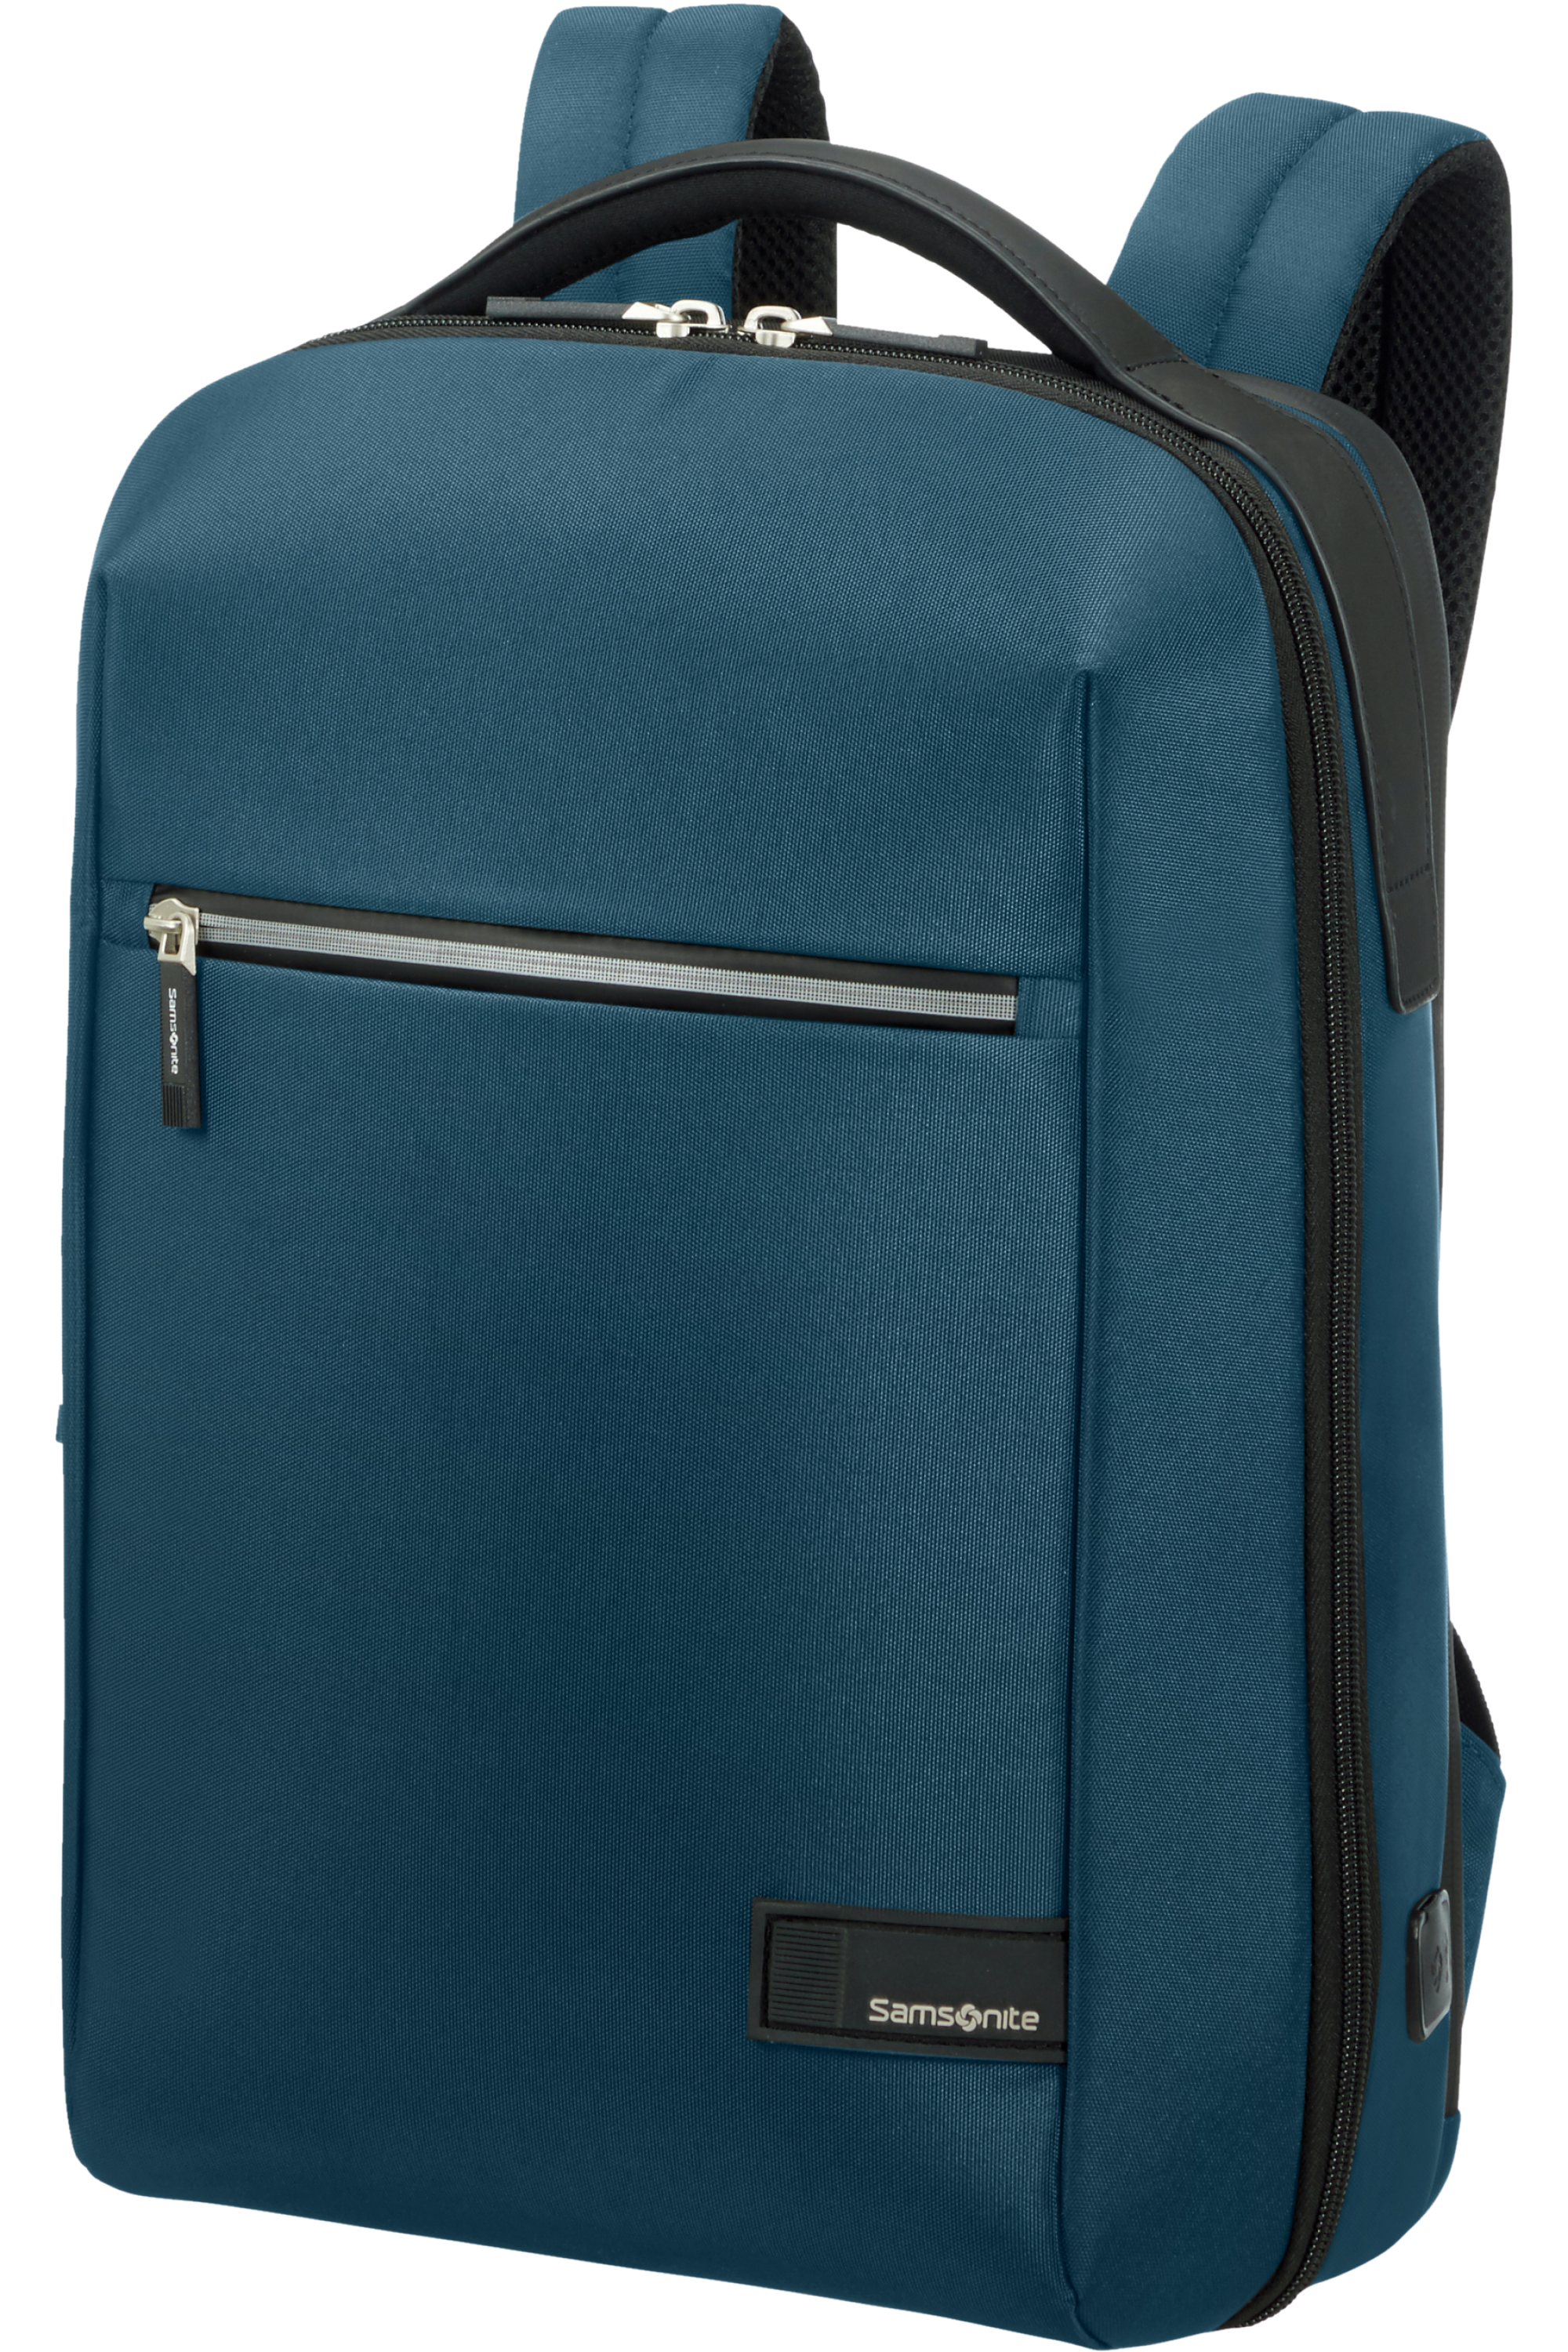 Samsonite GUARDIT 2.0 laptop backpack 17 inch | LUGGAGE BAZAAR